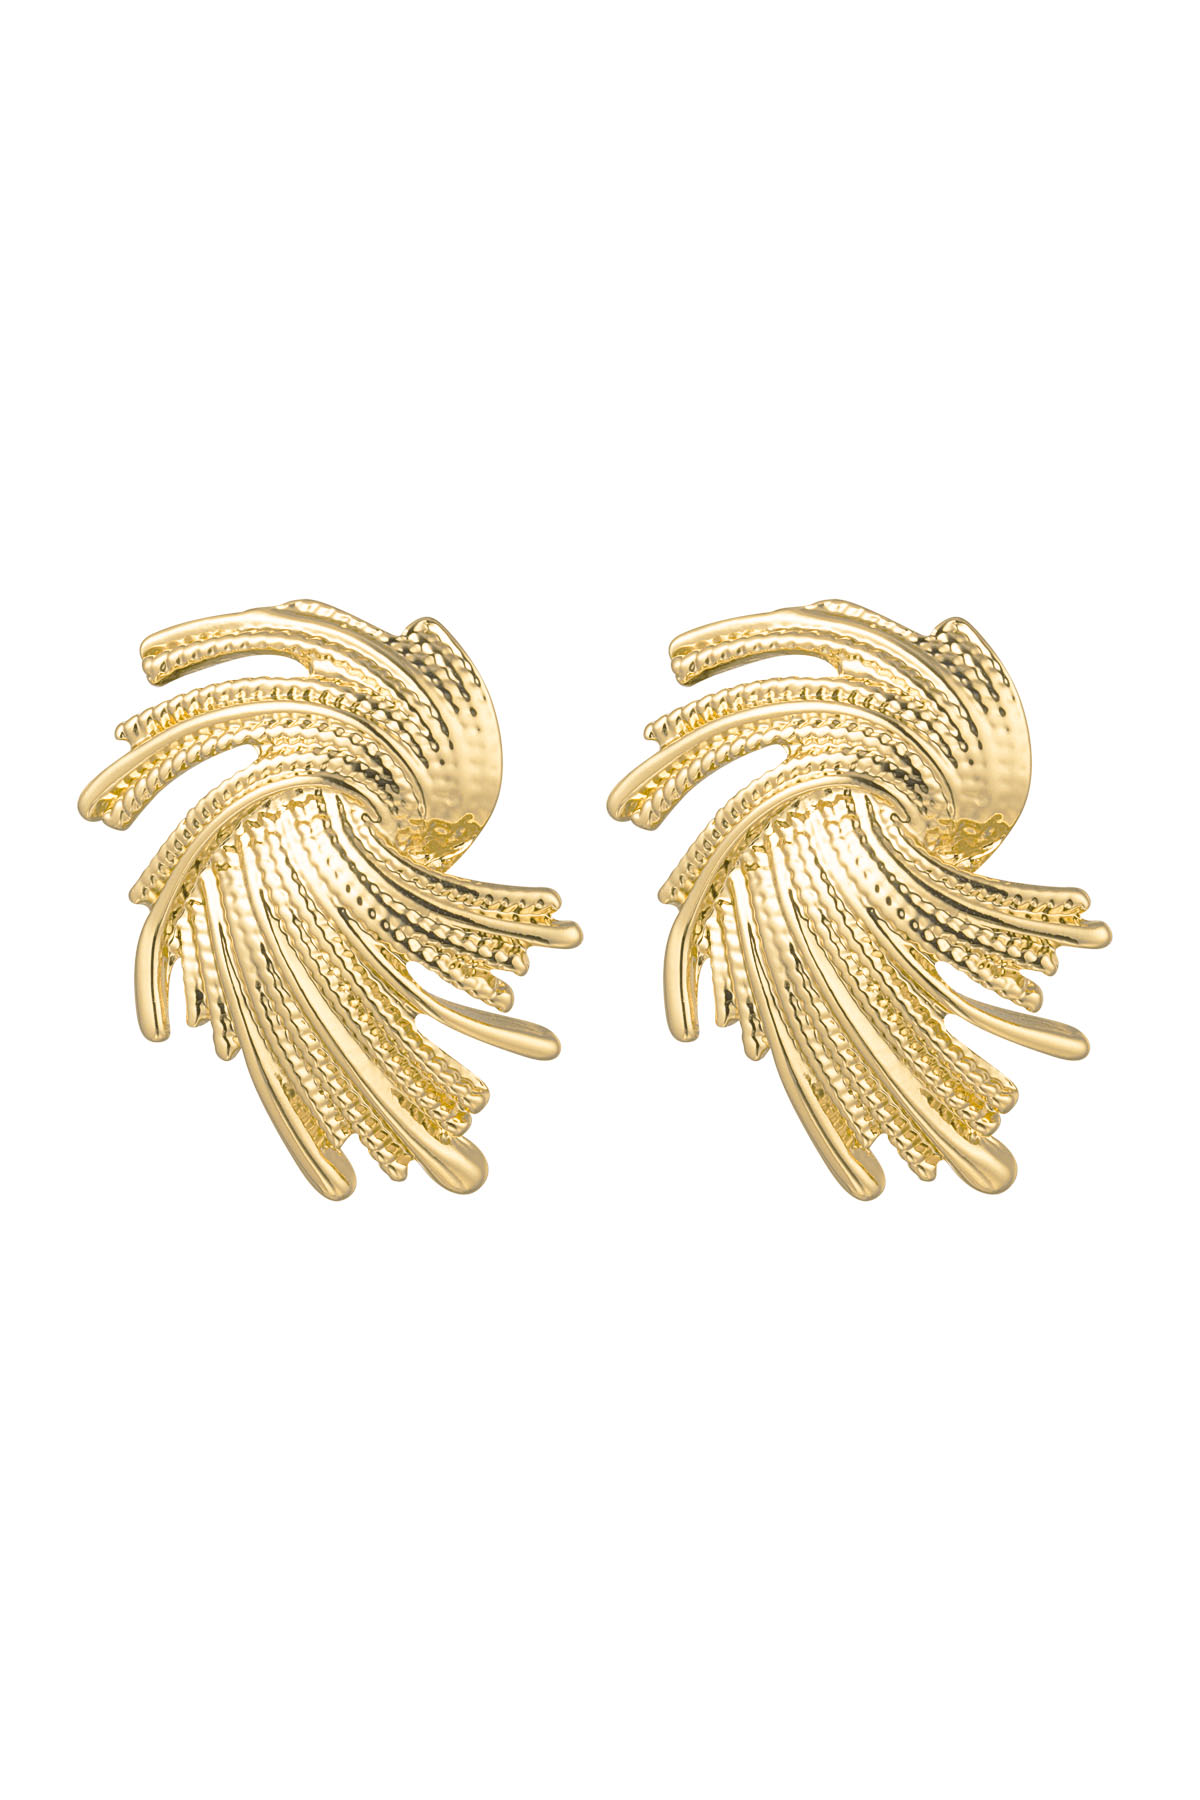 Earrings twizzel - gold Alloy h5 